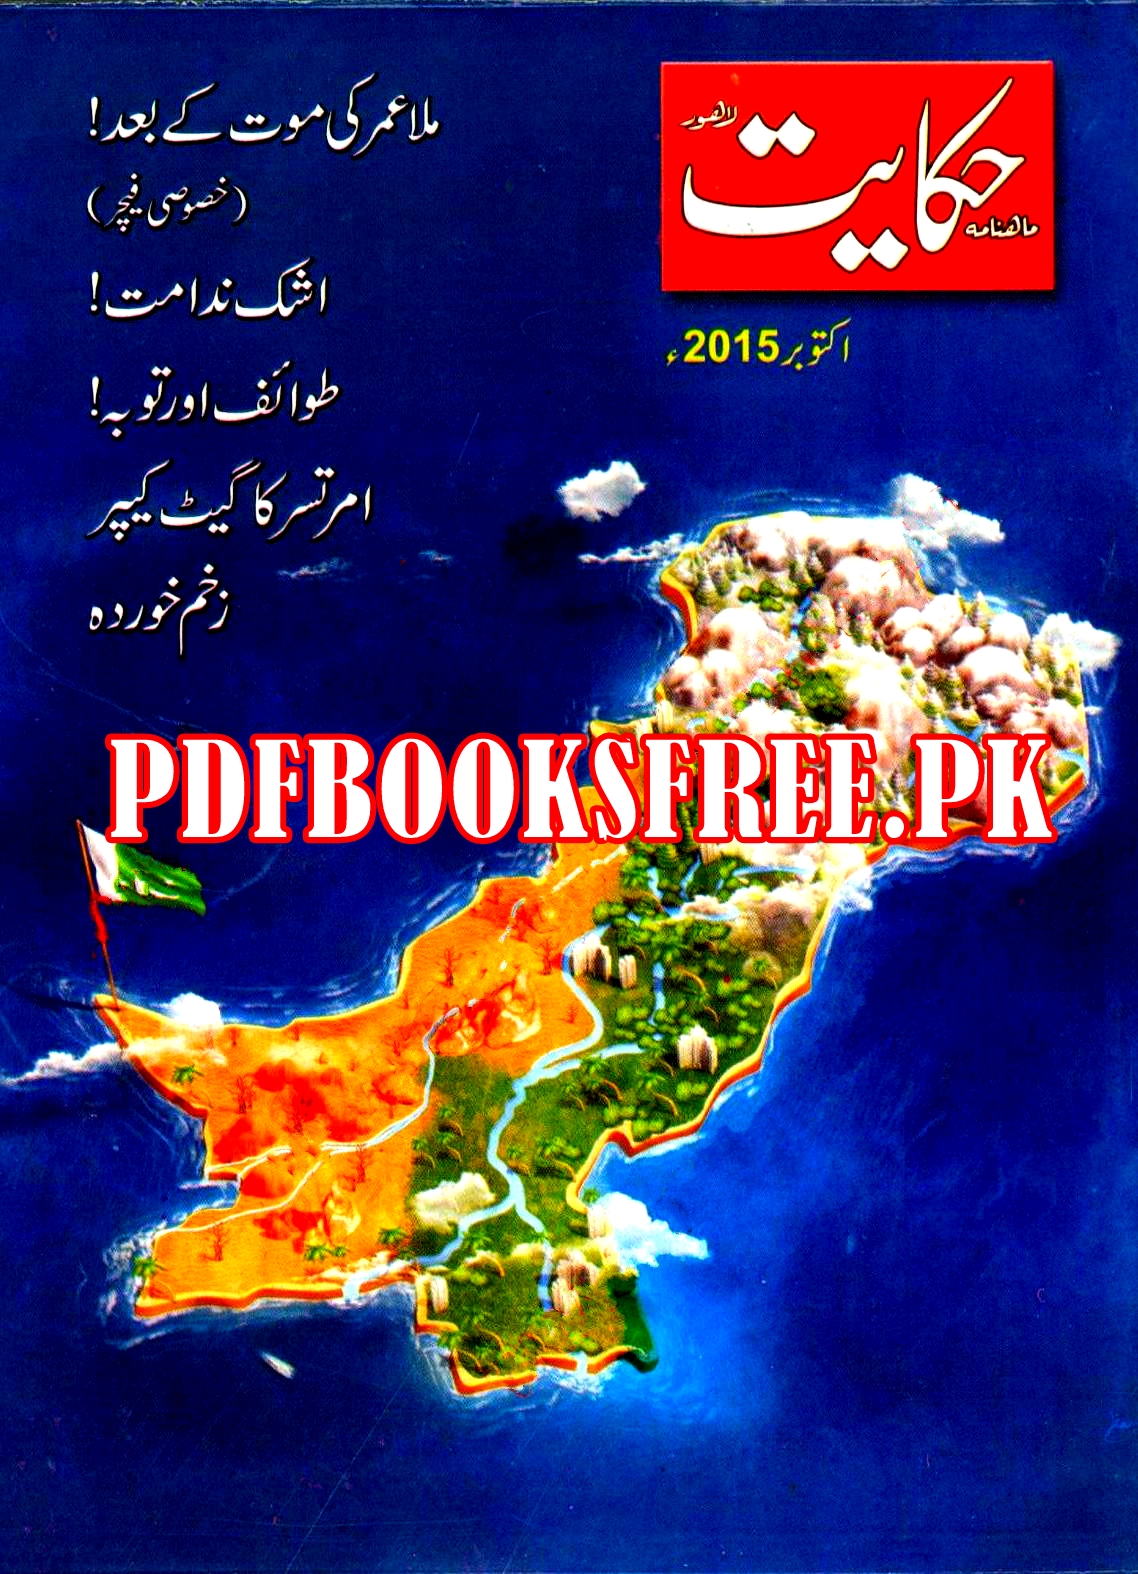 Hikayat Digest October 2015 Pdf Free Download